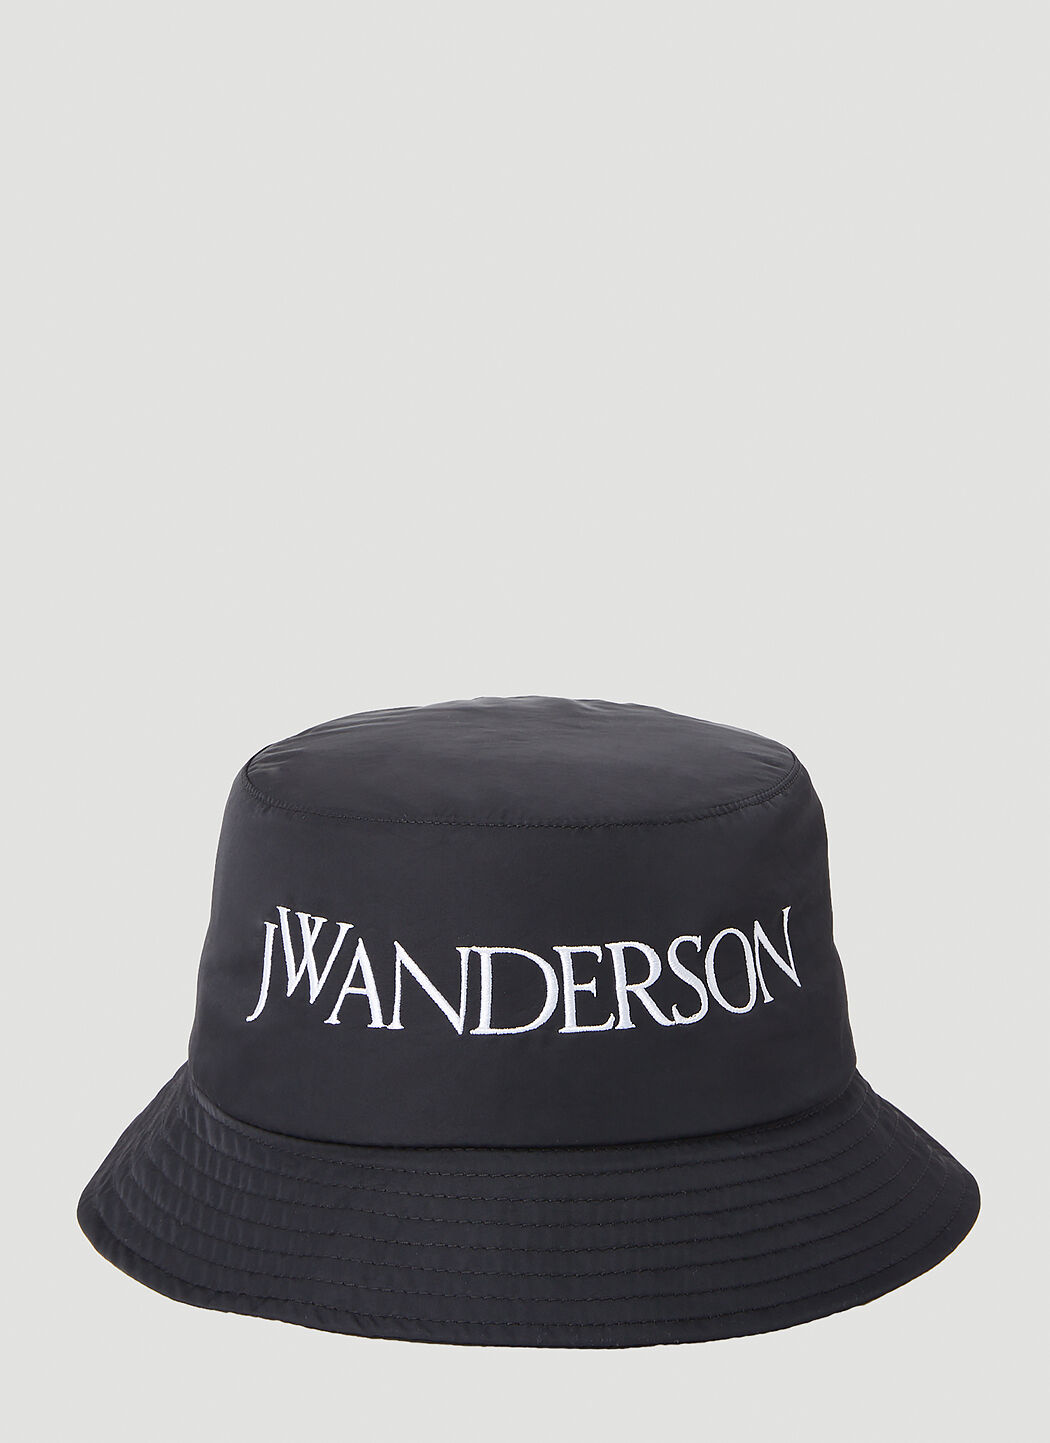 JW Anderson Logo Bucket Hat Beige jwa0156008